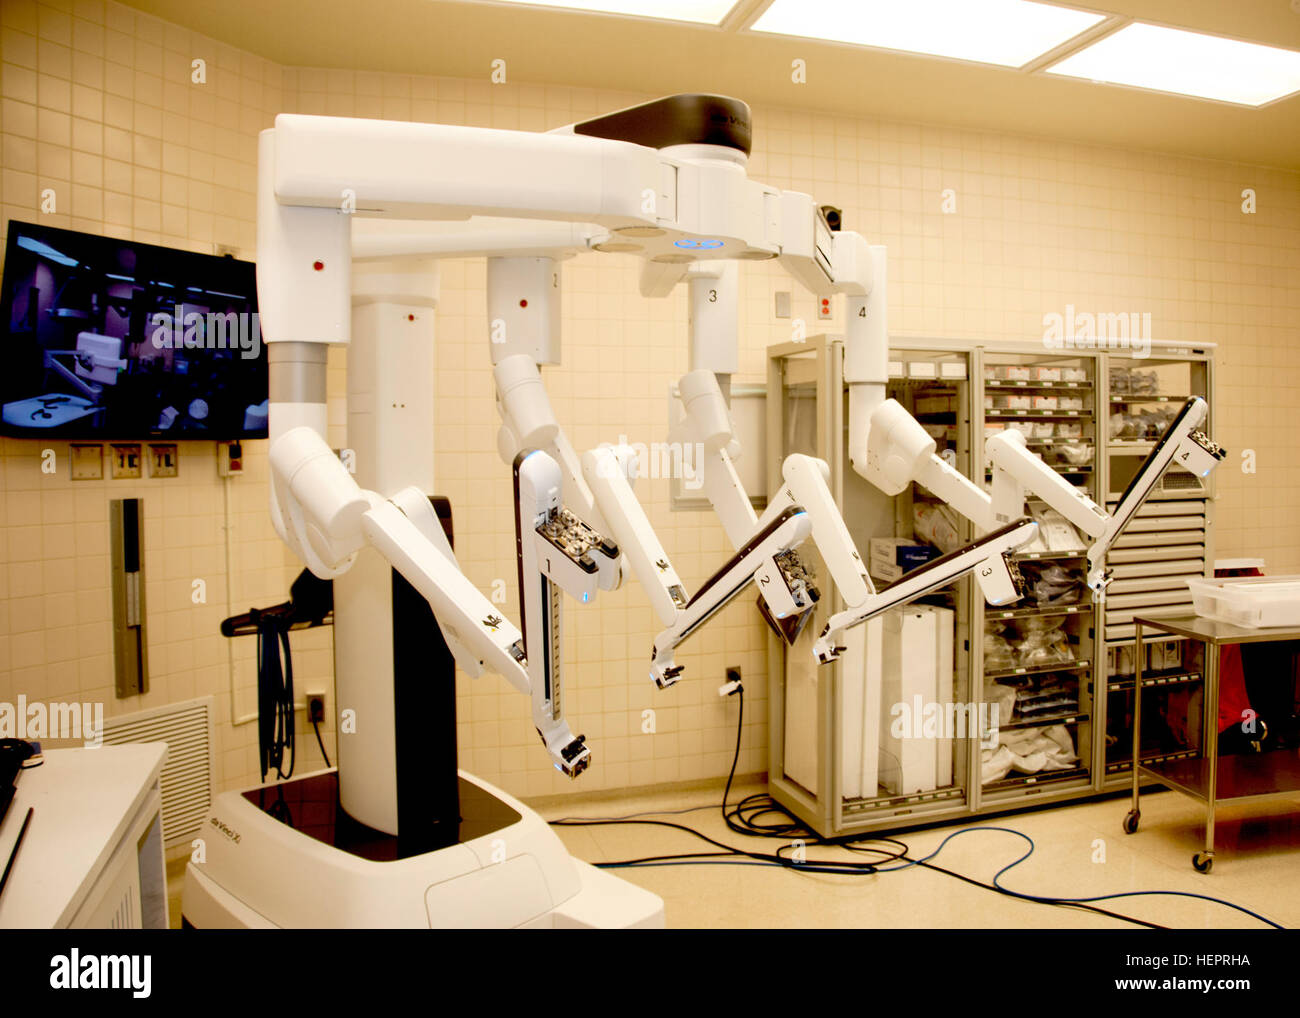 William Beaumont Army Medical Center durchgeführt die erste Roboter-Chirurgie in das Department of Defense mit DaVinci Xi chirurgische System, ein minimal-invasive Roboter-Chirurgie-System, WBAMC, 2 Mai. Der Chirurg manipuliert System ermöglicht Chirurgen operieren mit Instrumenten, die biegen und drehen weit größer als die menschlichen Handgelenk durch einen Schnitt kleiner als einen Zentimeter zu artikulieren. WBAMC zuerst in DoD Roboter für Chirurgie 160426-A-EK666-506 verwenden Stockfoto